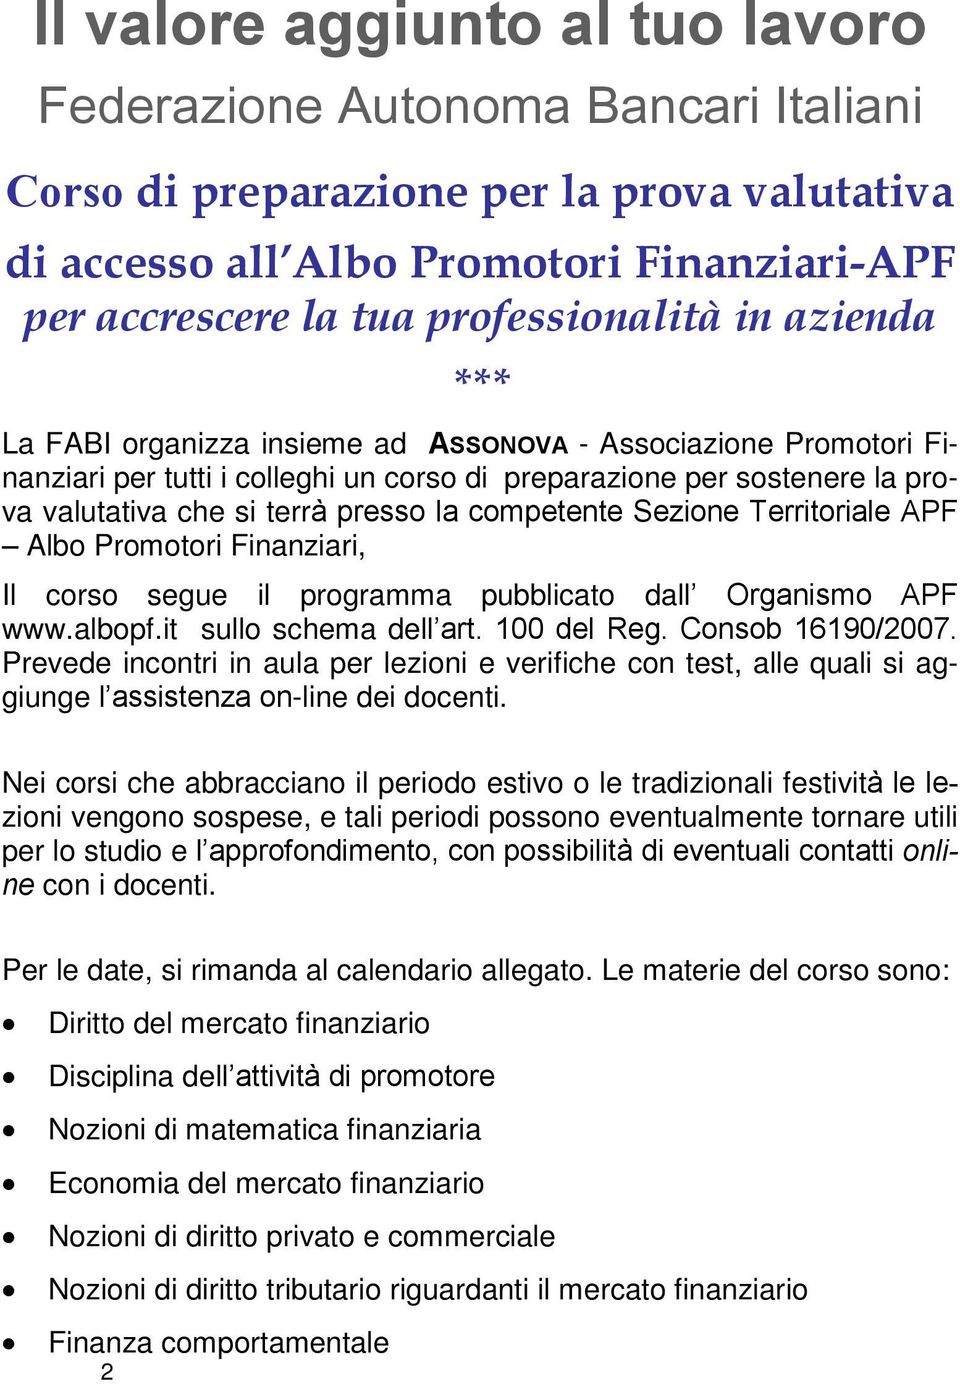 competente Sezione Territoriale APF Albo Promotori Finanziari, Il corso segue il programma pubblicato dall Organismo APF www.albopf.it sullo schema dell art. 100 del Reg. Consob 16190/2007.